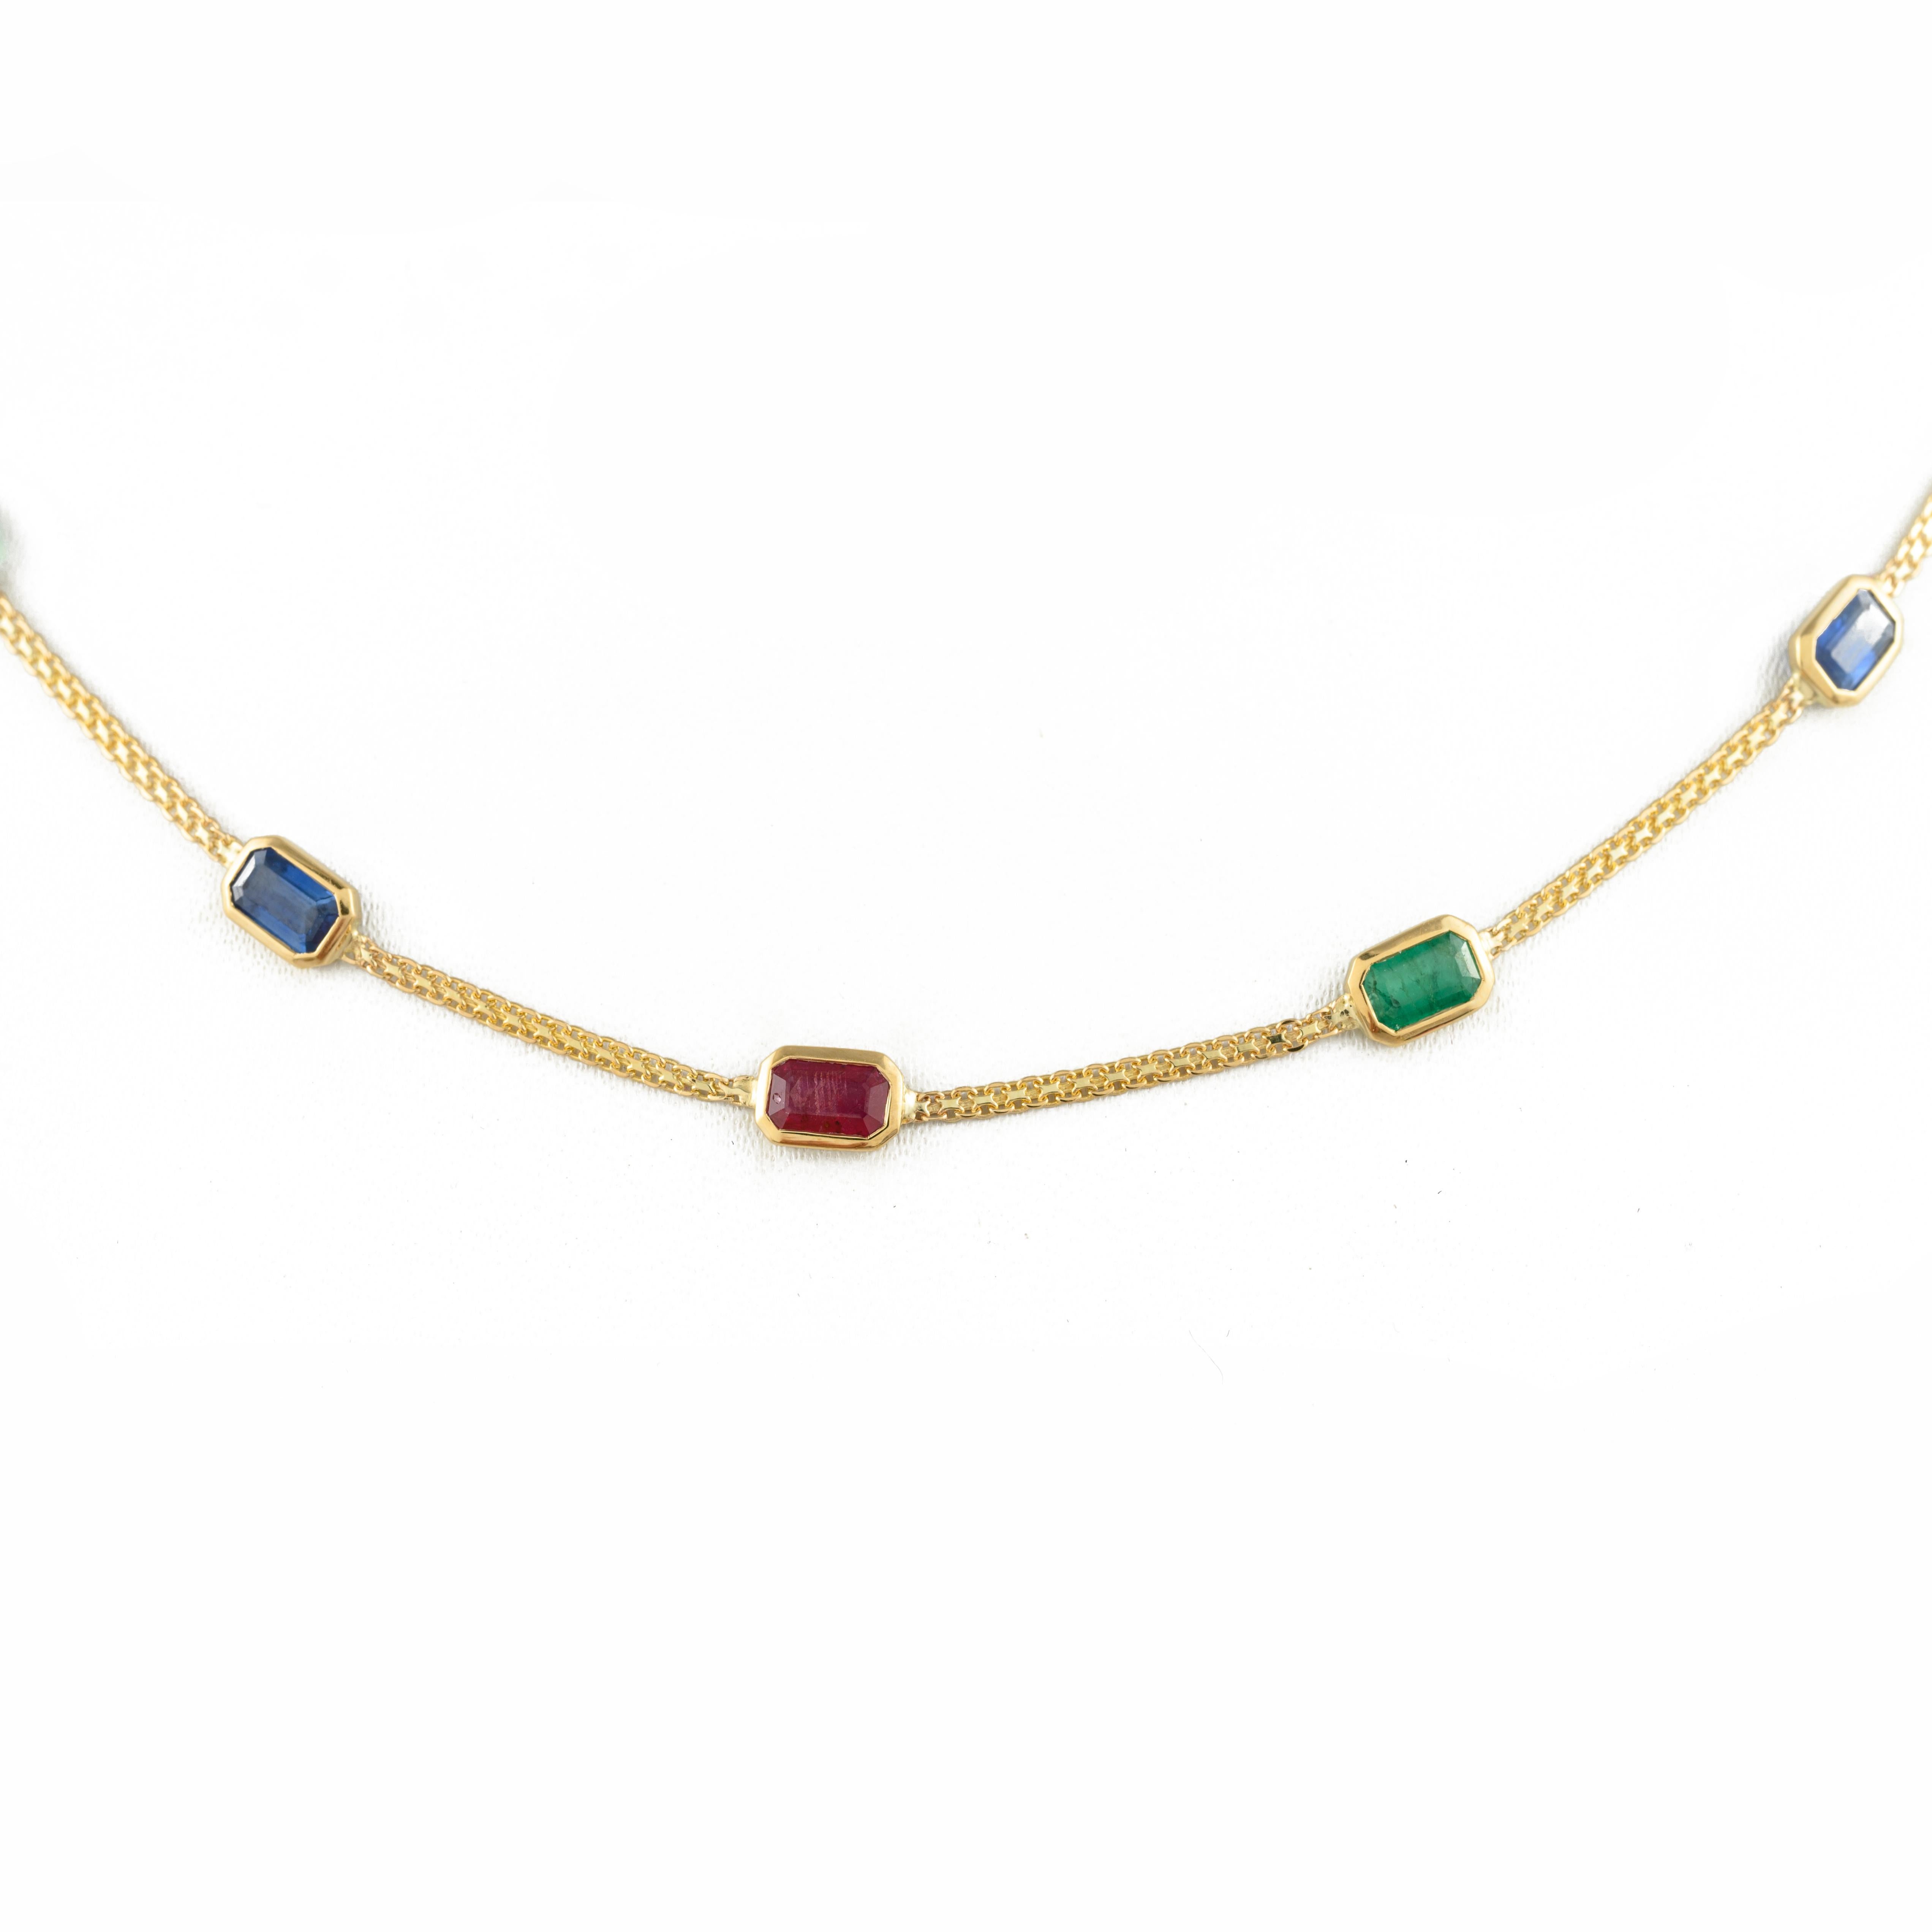 Smaragd-Rubin-Saphir-Halskette mit Smaragd, Rubin und Saphir aus 18 Karat Gold. Dieses atemberaubende Schmuckstück wertet einen Freizeitlook oder ein elegantes Outfit sofort auf. 
Der Smaragd steigert die intellektuellen Fähigkeiten, der Saphir